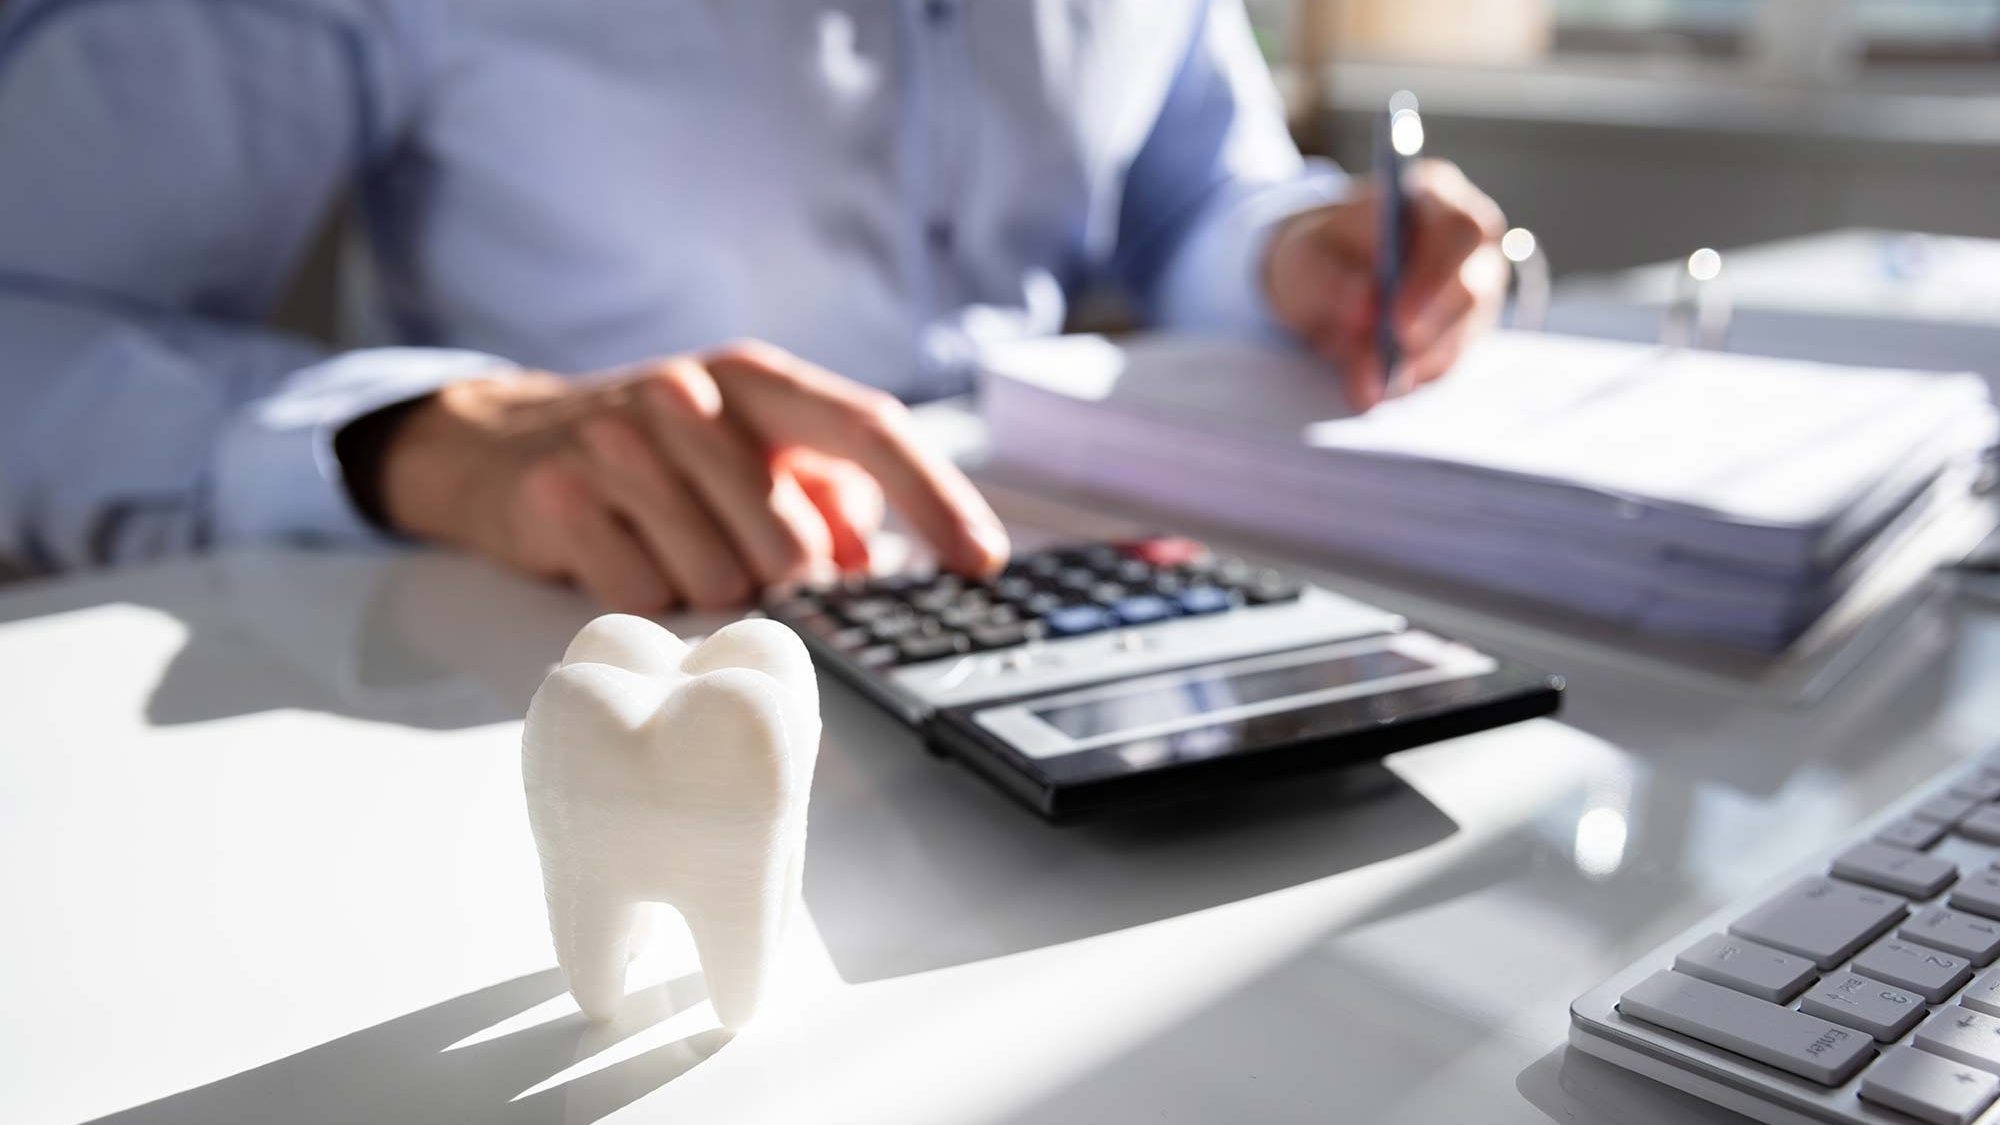 Налоговый вычет за протезирование зубов